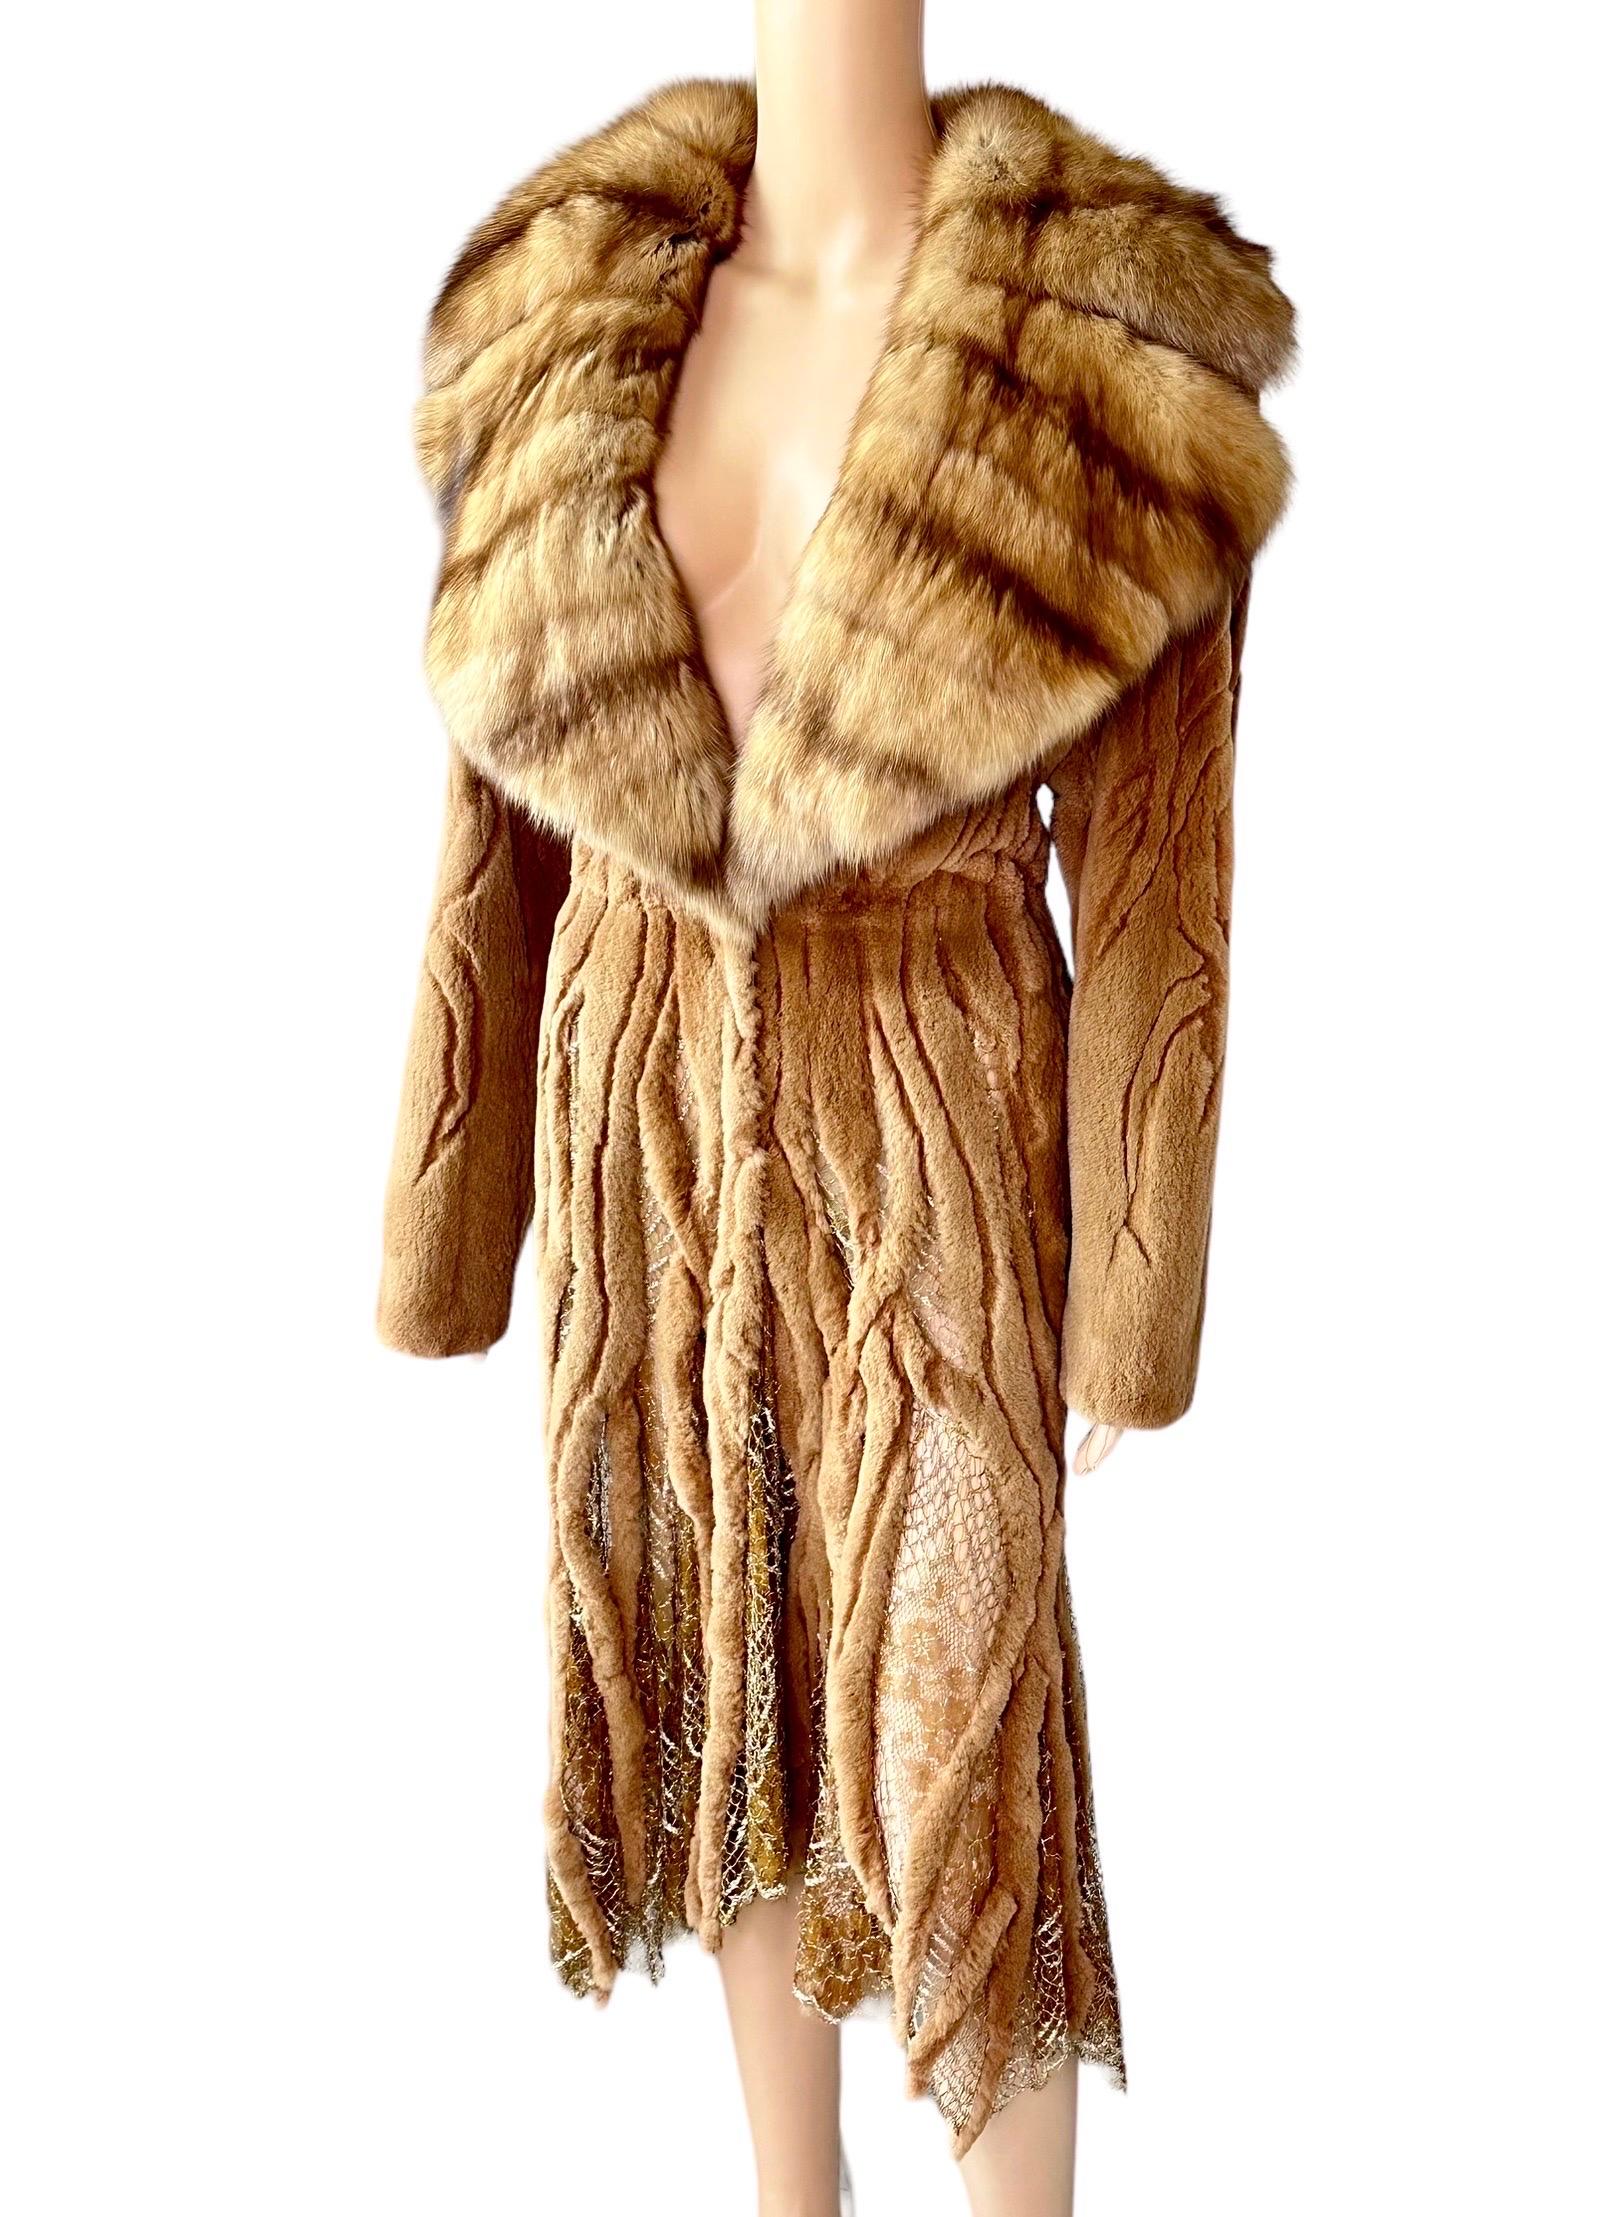 Women's or Men's Atelier Gianni Versace c.1996 Fur Cutout Sheer Lace Mesh Panels Jacket Coat For Sale